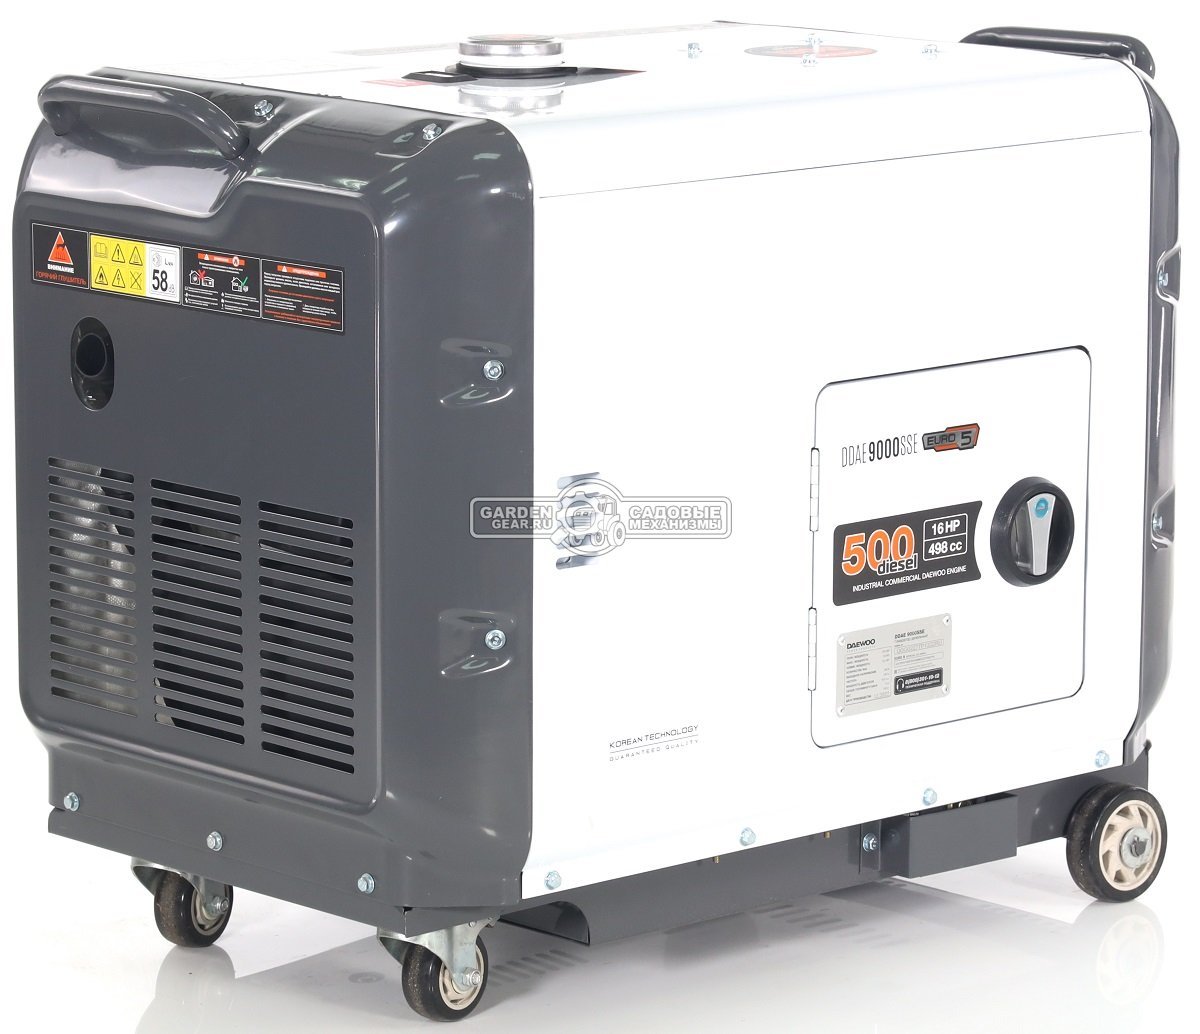 Дизельный генератор Daewoo DDAE 9000SSE в шумозащитном кожухе (PRC, 498 см3, 16 л.с., 6,4/7,0 кВт., электростарт, колеса, ATS - опция, 15 л, 148,1 кг)